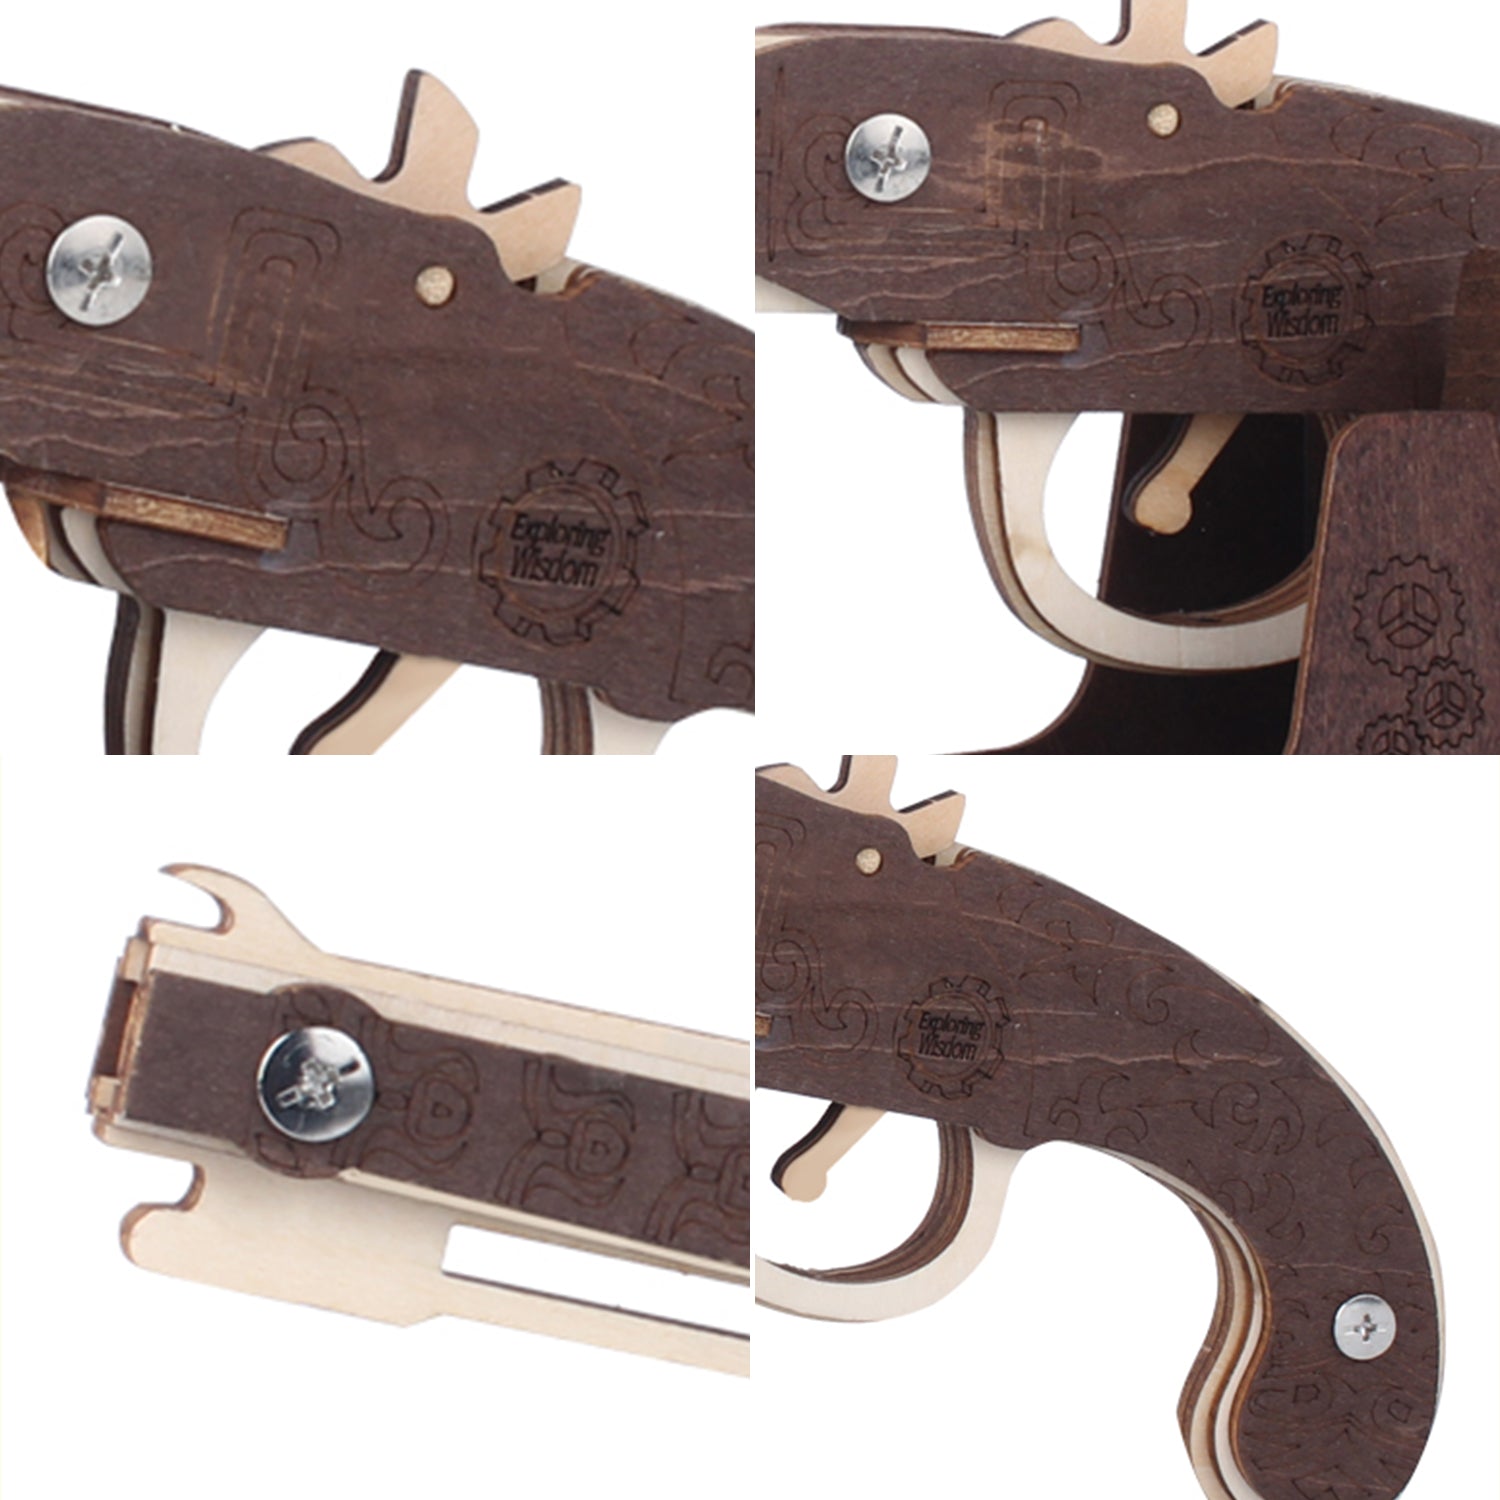 TSZH 007 DIY Guns Kit |Birthday Gift | Hobby